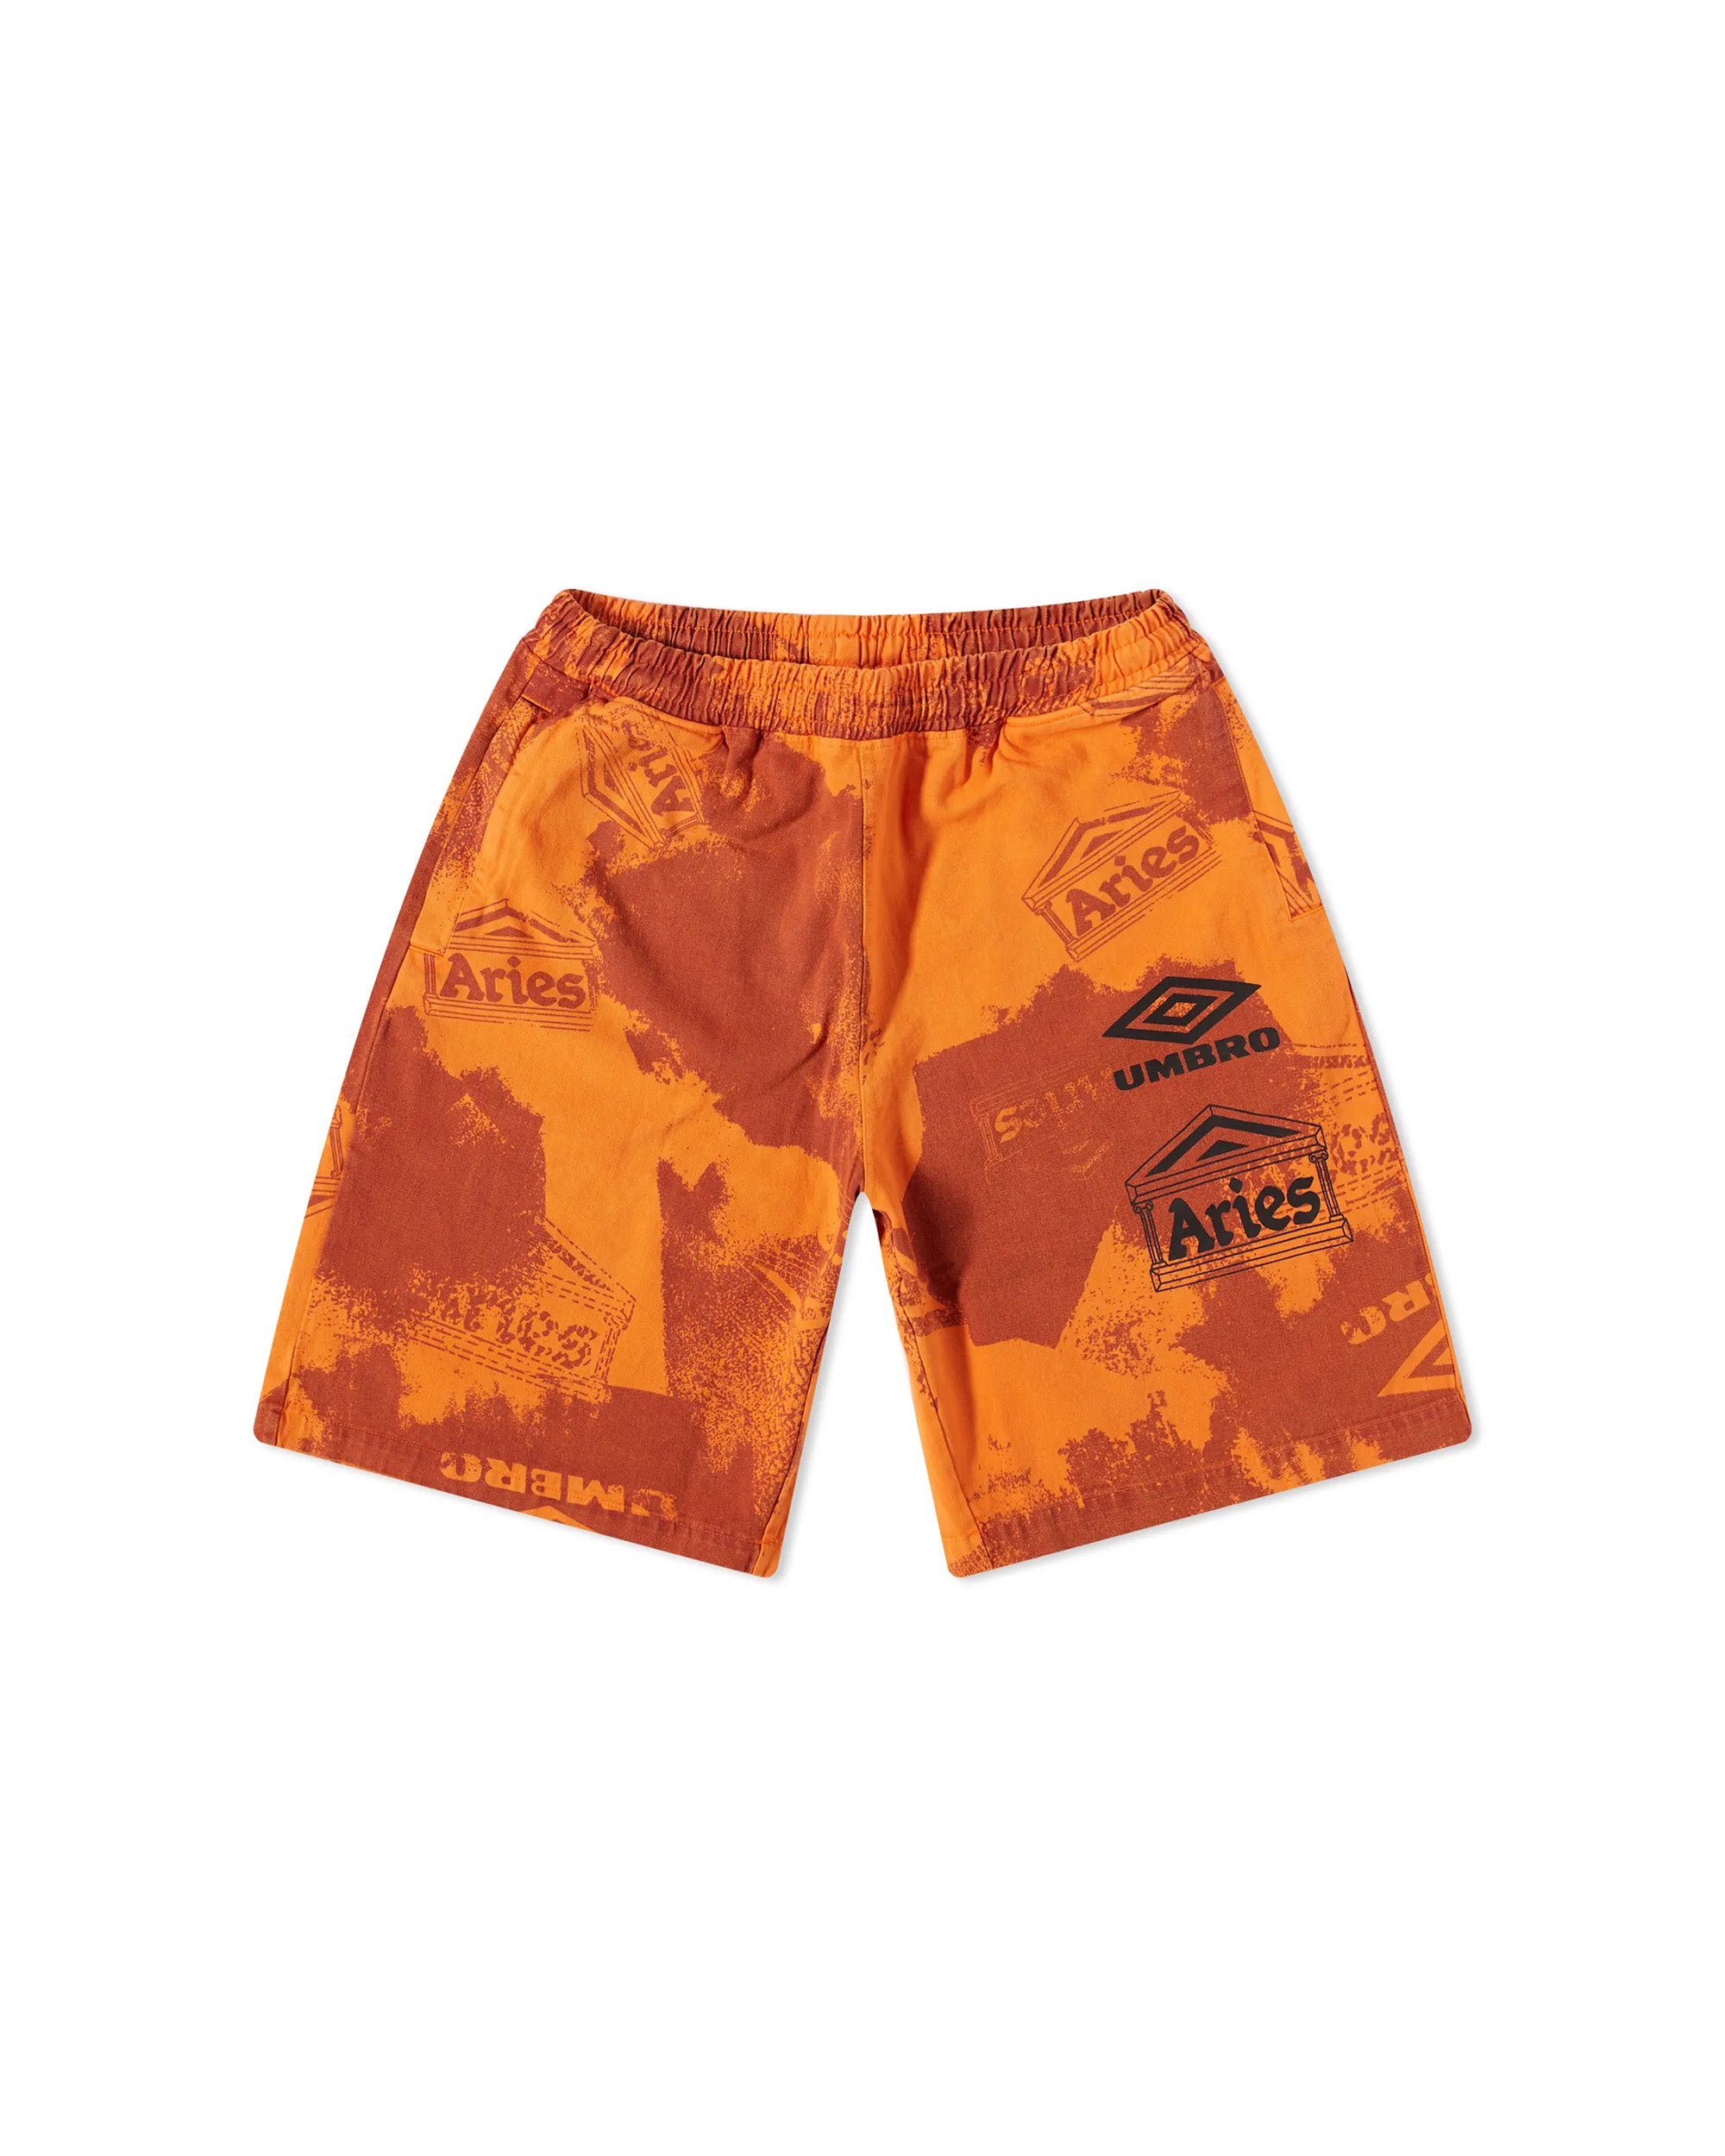 Umbro Pro 64 Shorts - Orange